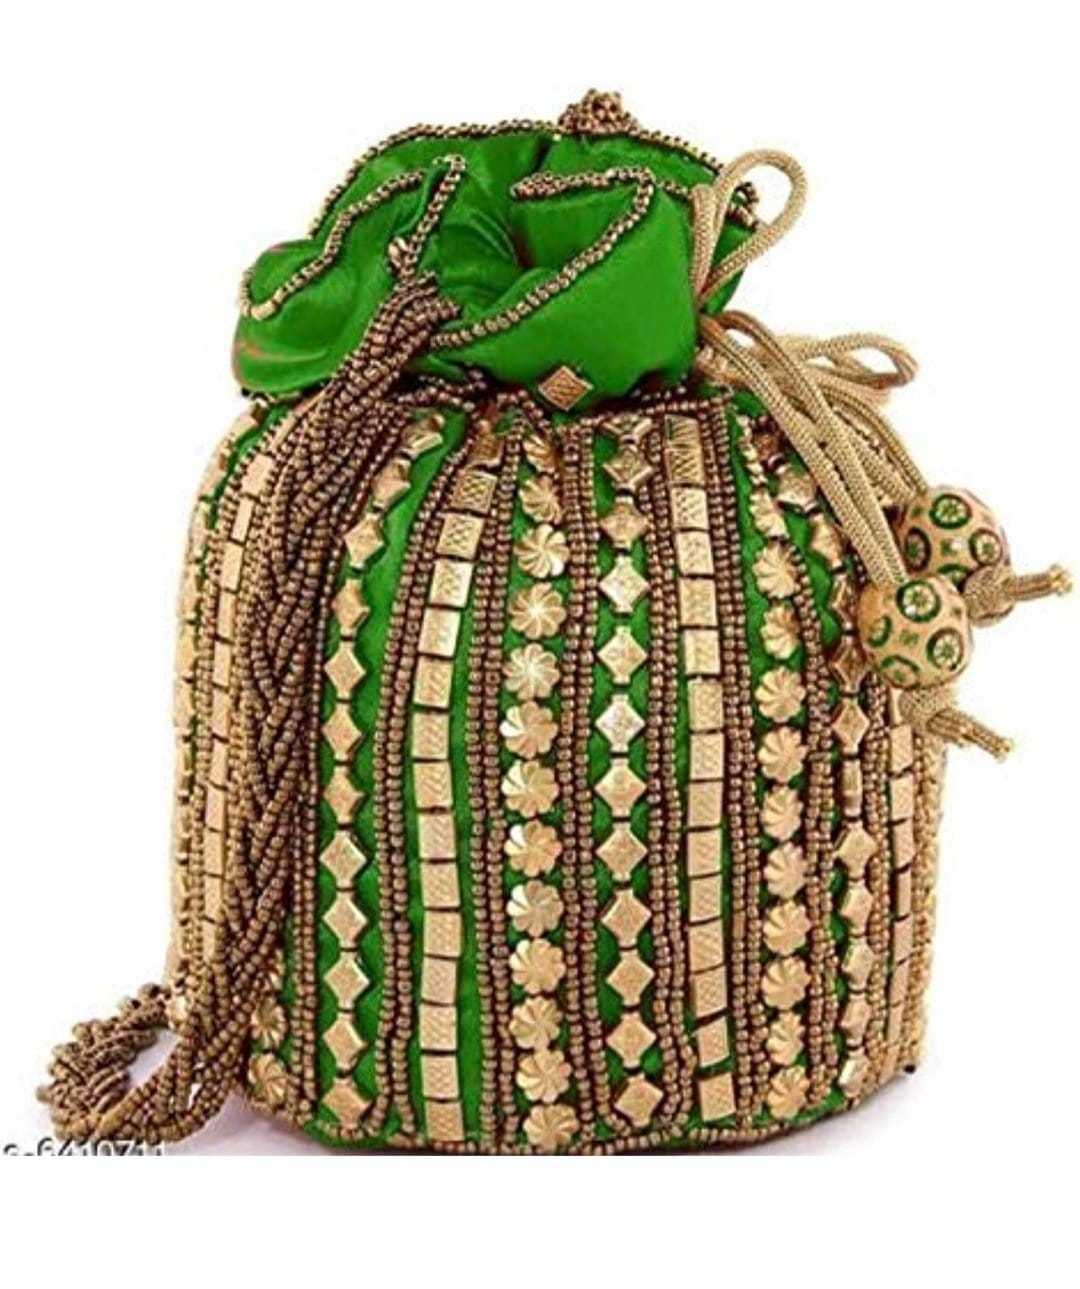 LAMANSH ® Women's Potli Bag LAMANSH Pack of 8 womens potli bags for wedding ; gifting